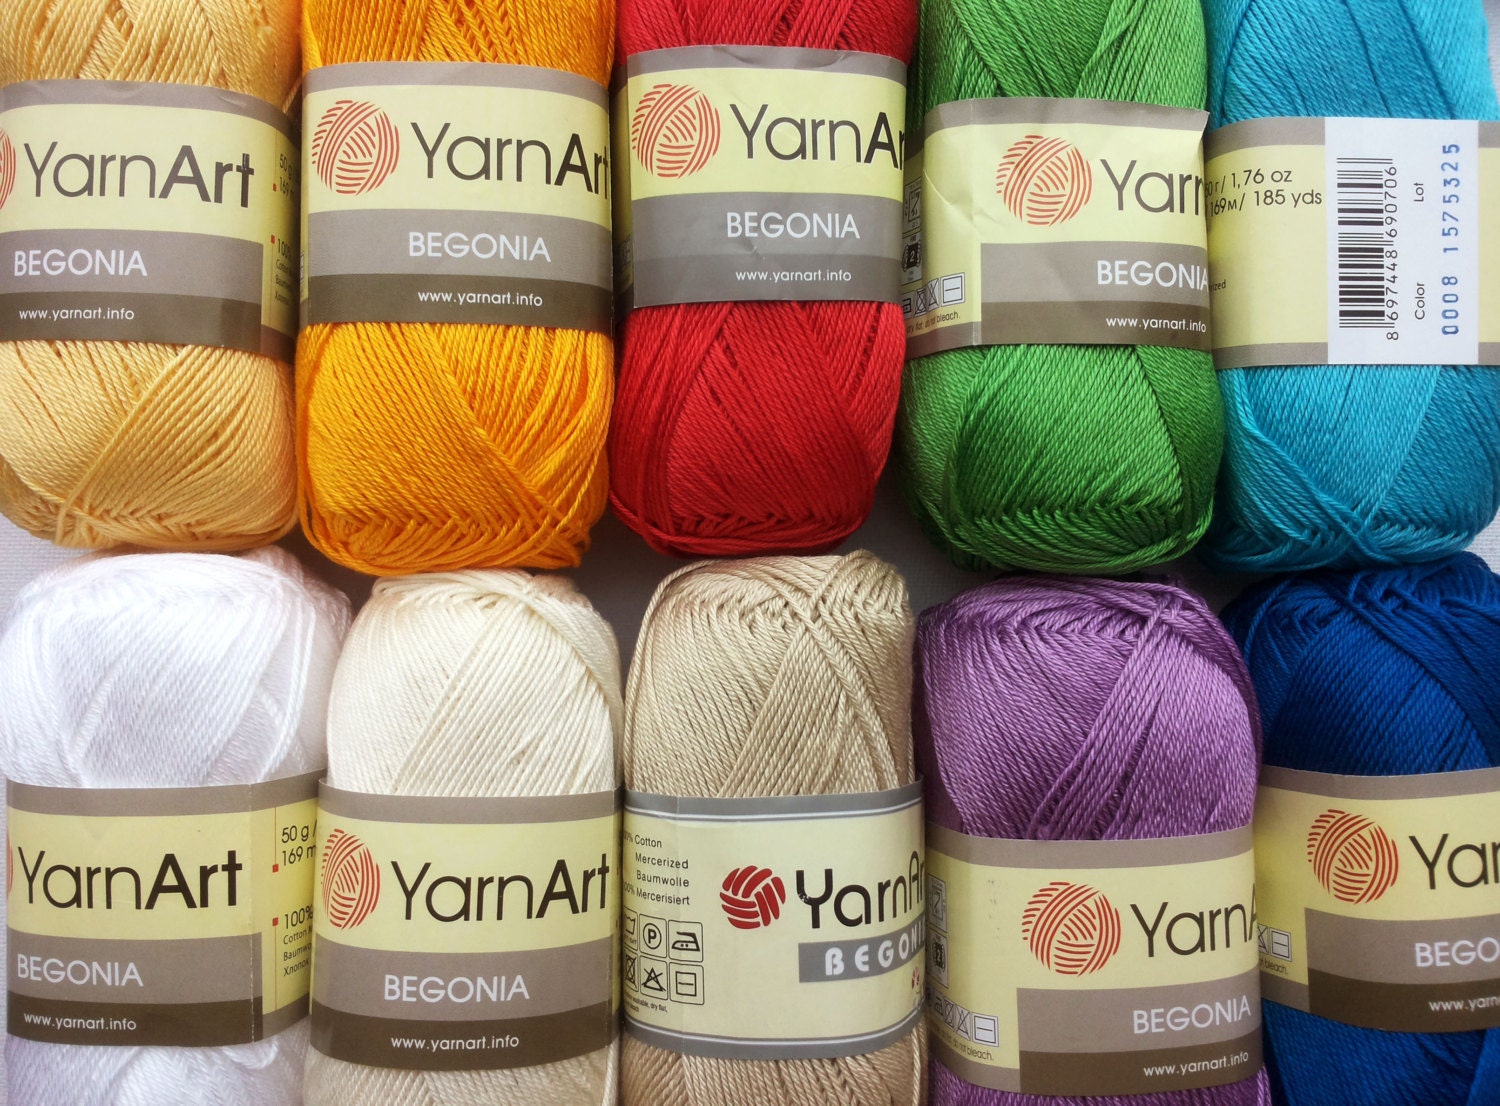 Crochetree 100% Mercerized Cotton Yarn, 50g / 125m, 4 Ply Fingering We